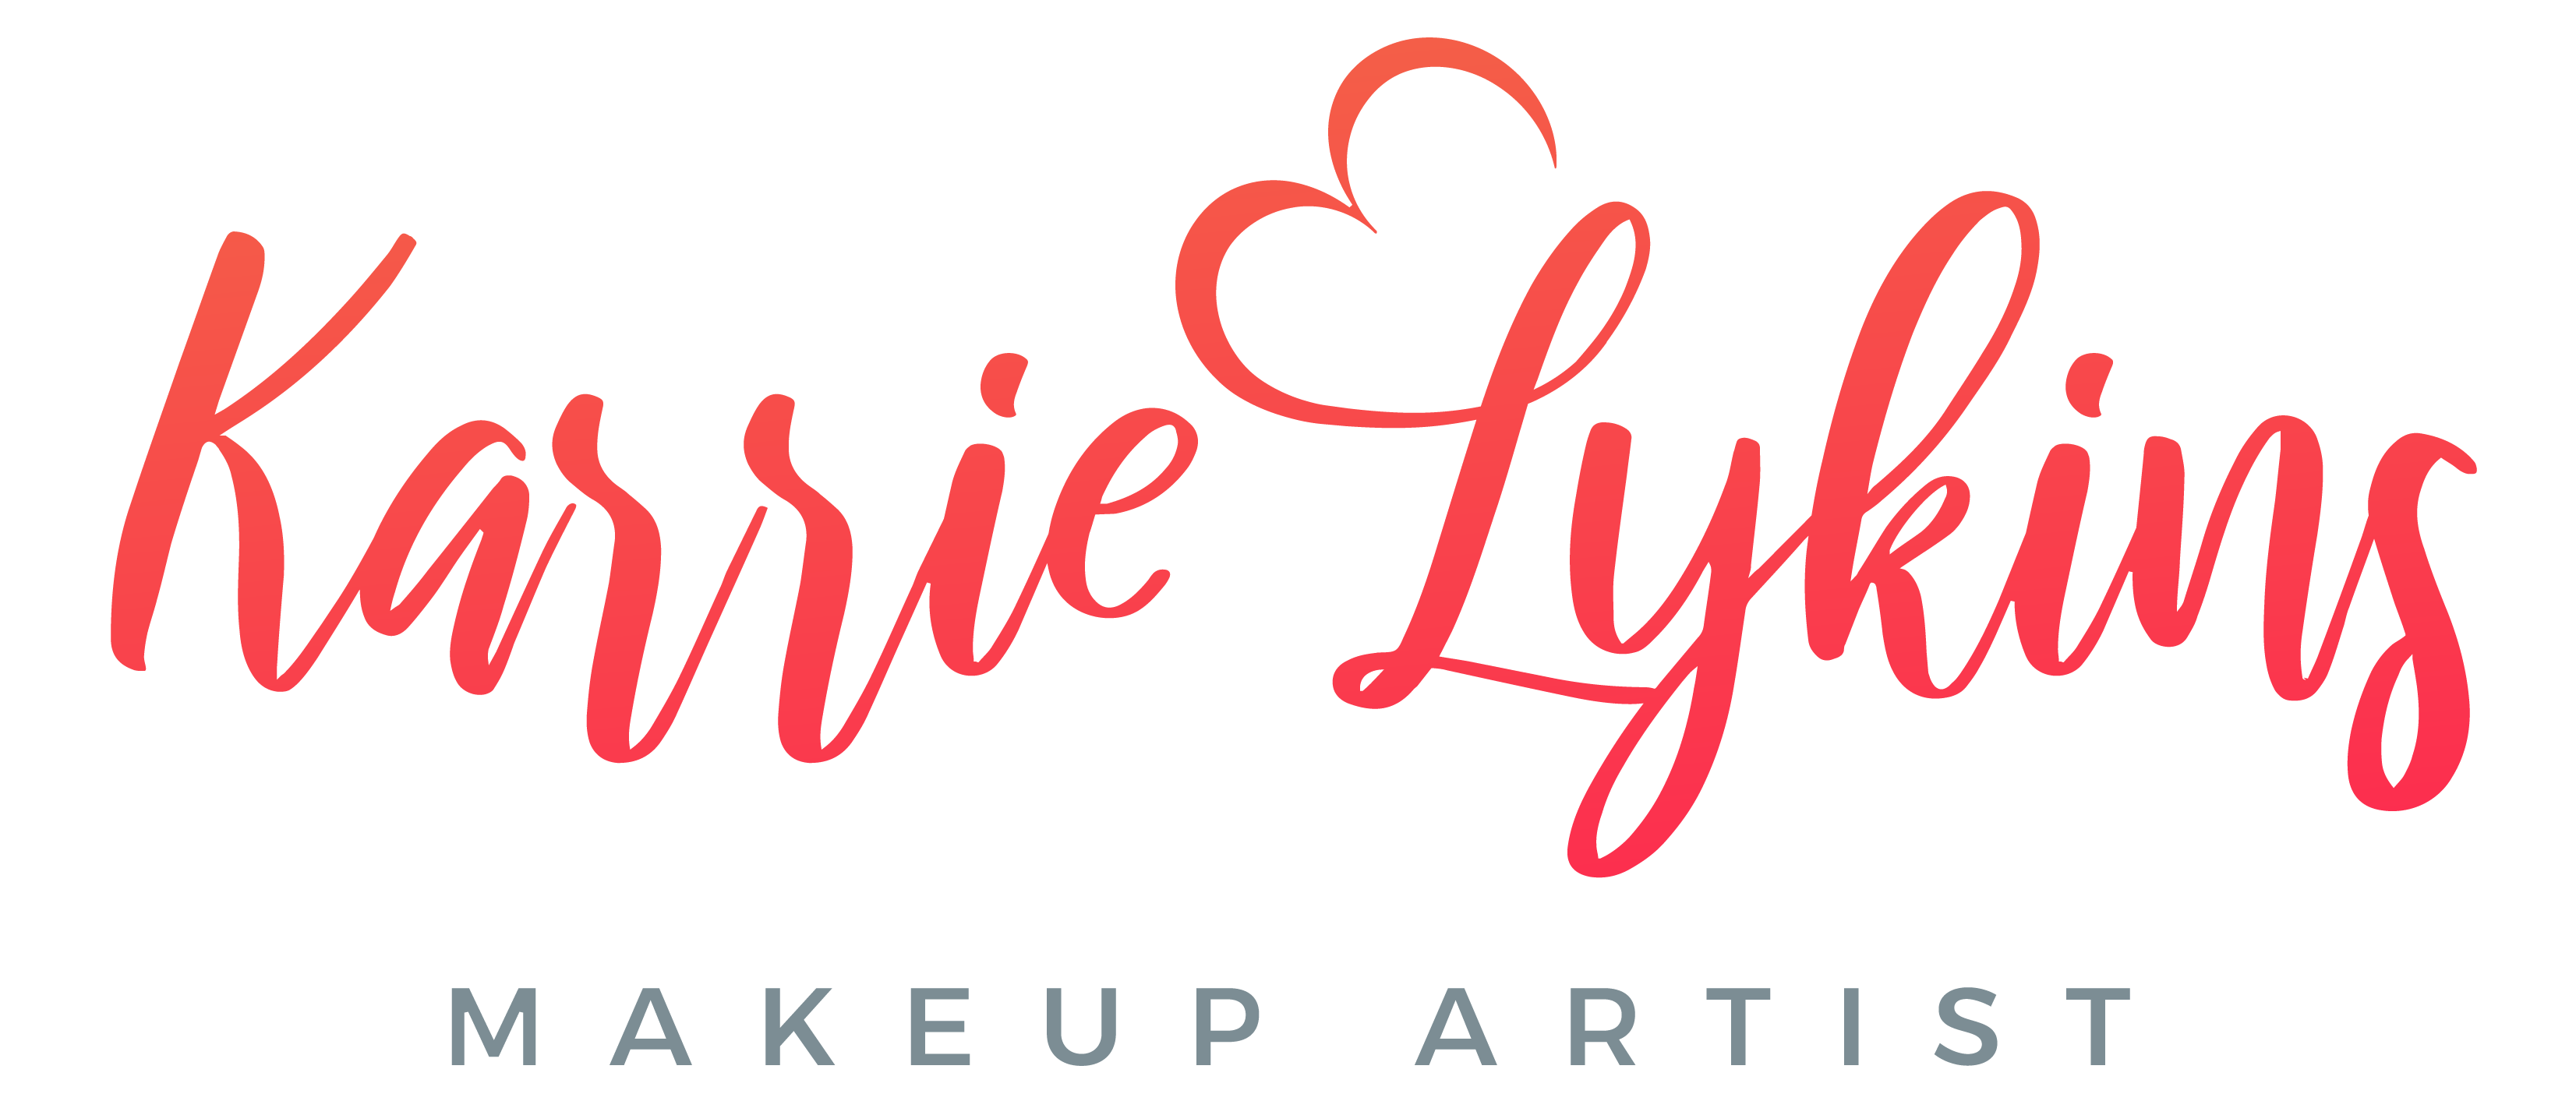 Karrie Lykins-Makeup Artist, LLC